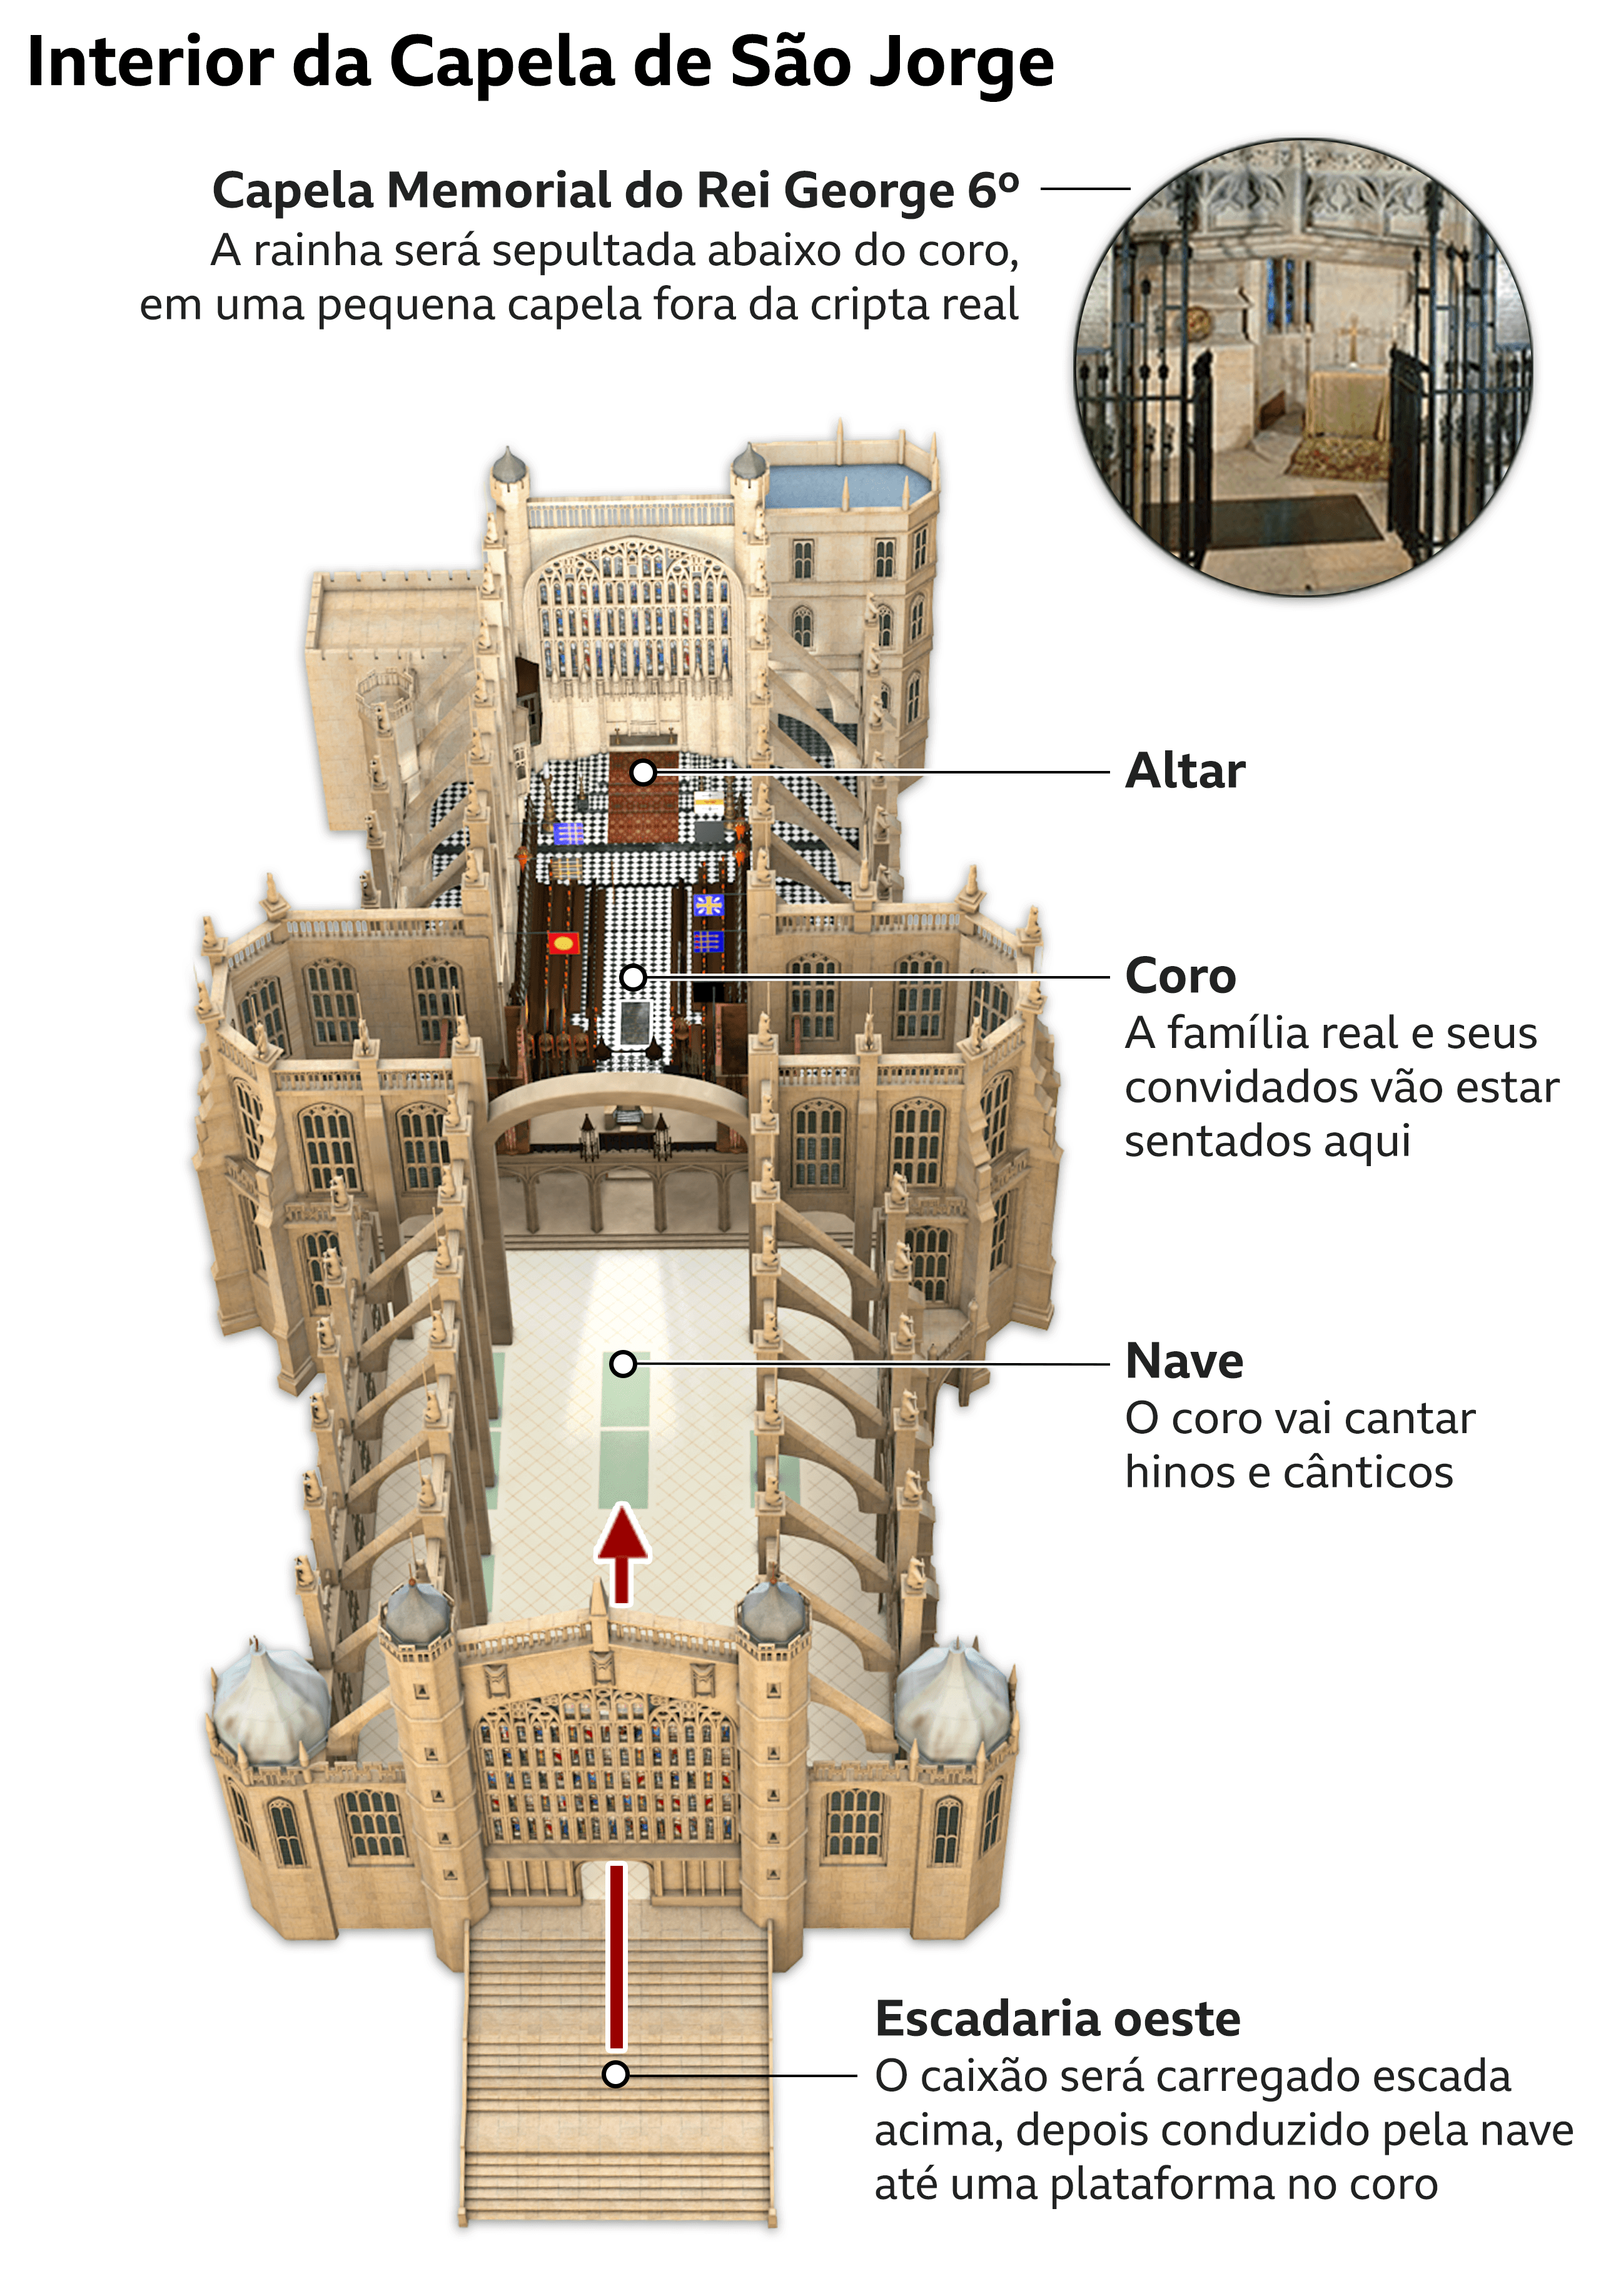 Infográfico mostra onde a rainha será sepultada dentro da Capela de São Jorge